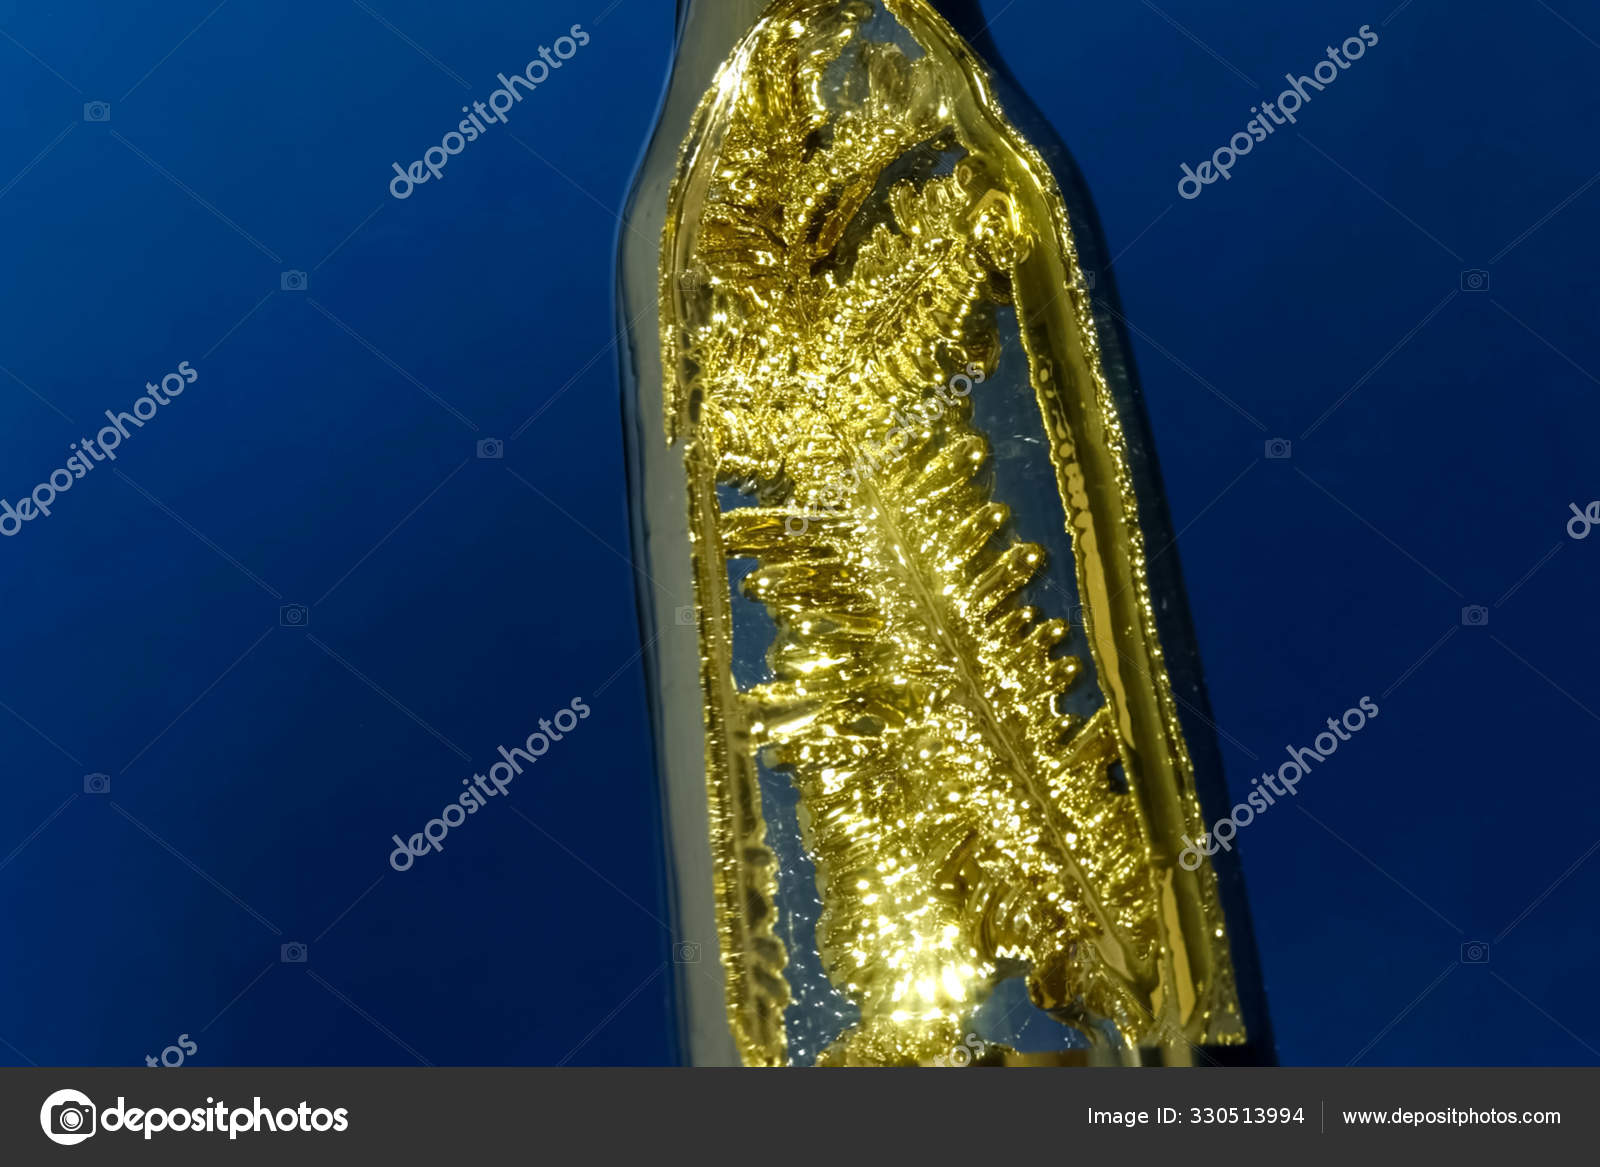 Ở thể rắn, cesium có cấu trúc tinh thể khá giống vàng. Ảnh: Depositphotos